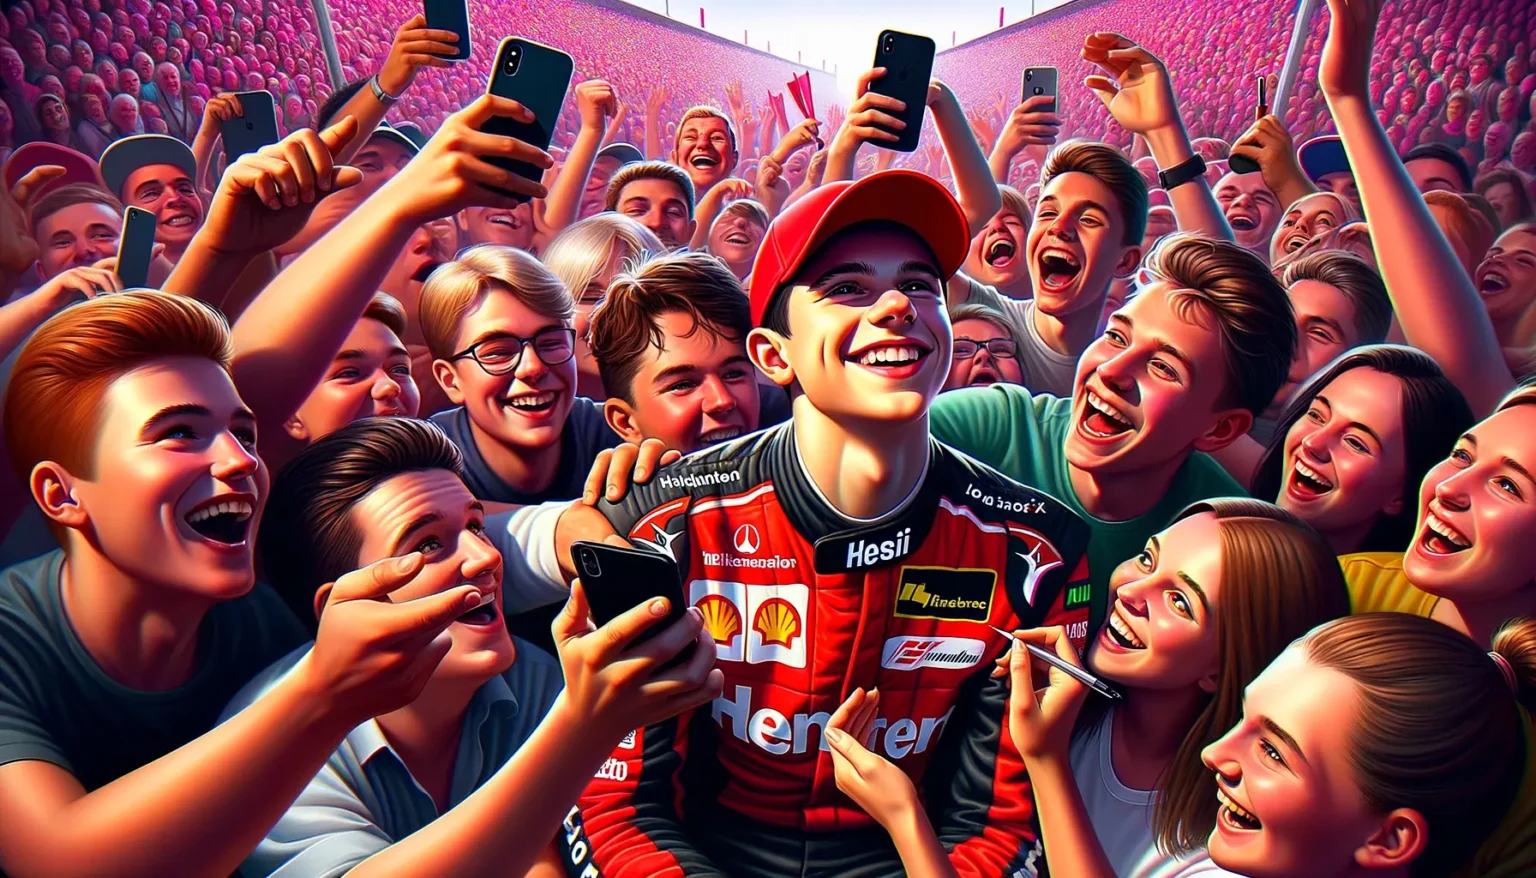 Eine animierte Darstellung eines glücklichen jungen Rennfahrers in einem roten Rennanzug, umgeben von begeisterten Fans, die Selfies machen. Alle lächeln und scheinen eine gute Zeit zu haben, während sie sich in einem stark besuchten Veranstaltungsort befinden.